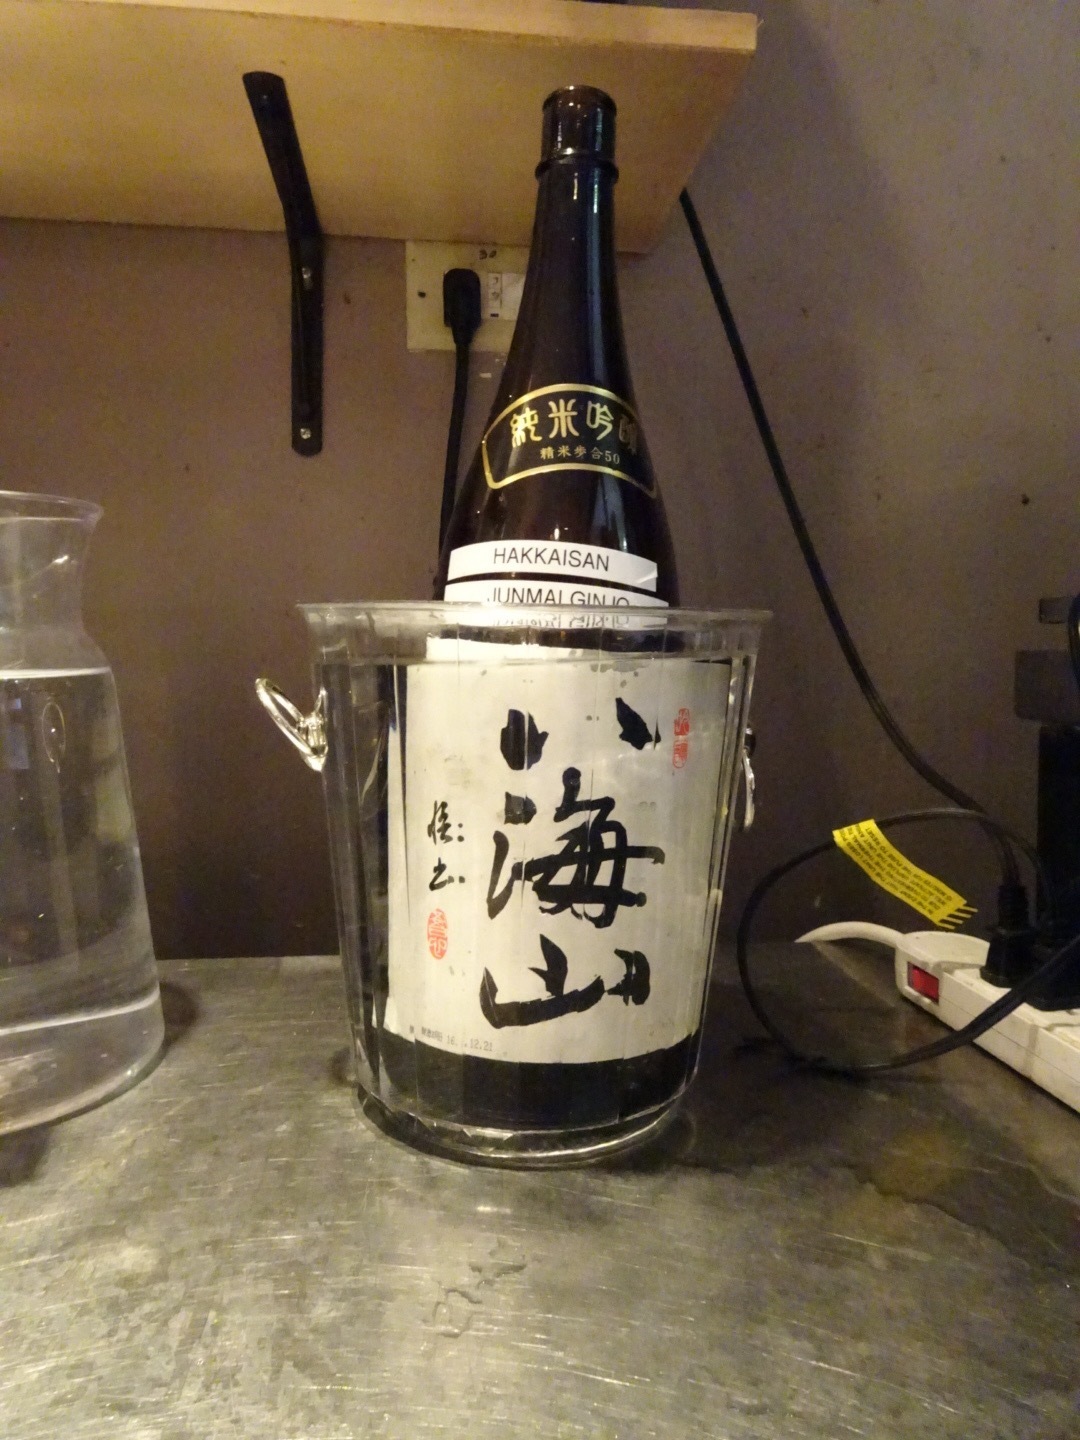 ワイン 日本酒 ラベルの剥がし方 和食レストランｅｎと藤一番らーめんのスタッフがお届けするグアム情報ブログ